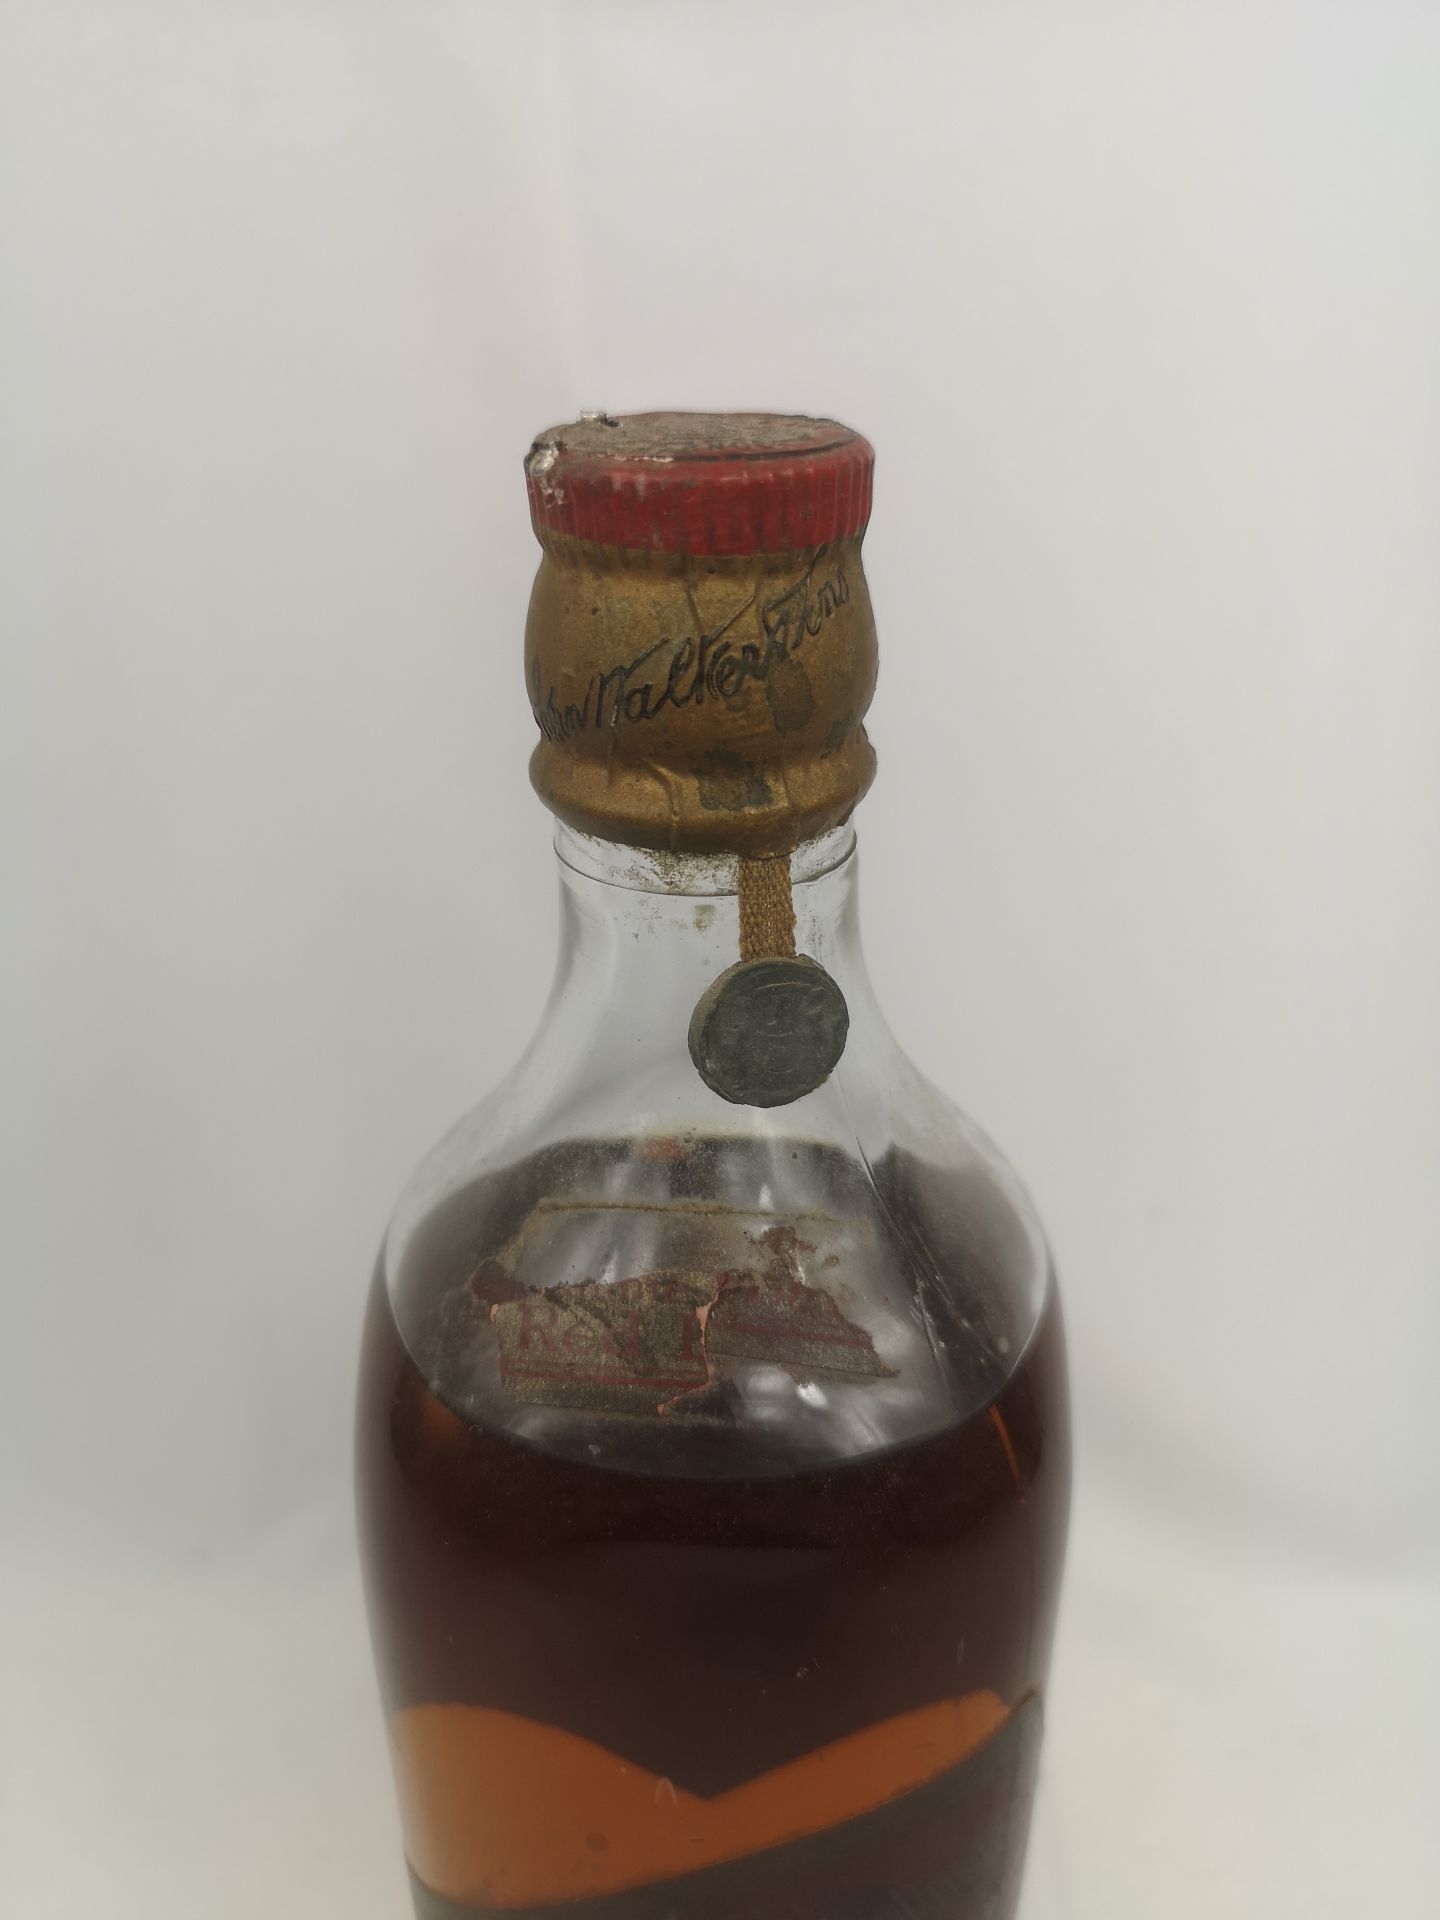 Bottle of John Walker Special Old Highland Whisky - Image 3 of 4